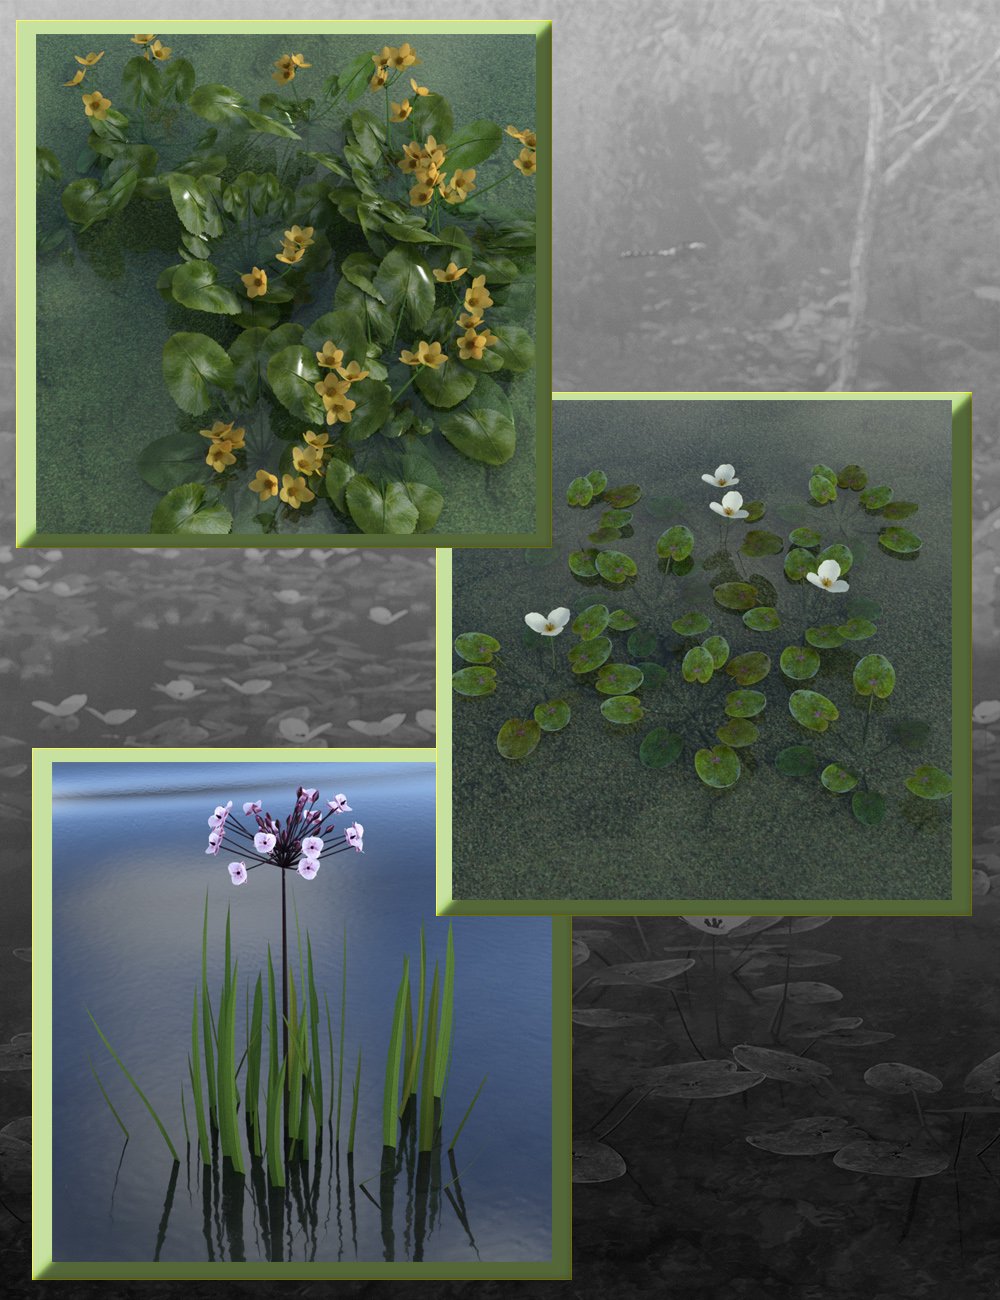 Wild Flowers - Water Plants vol 1 by: MartinJFrost, 3D Models by Daz 3D